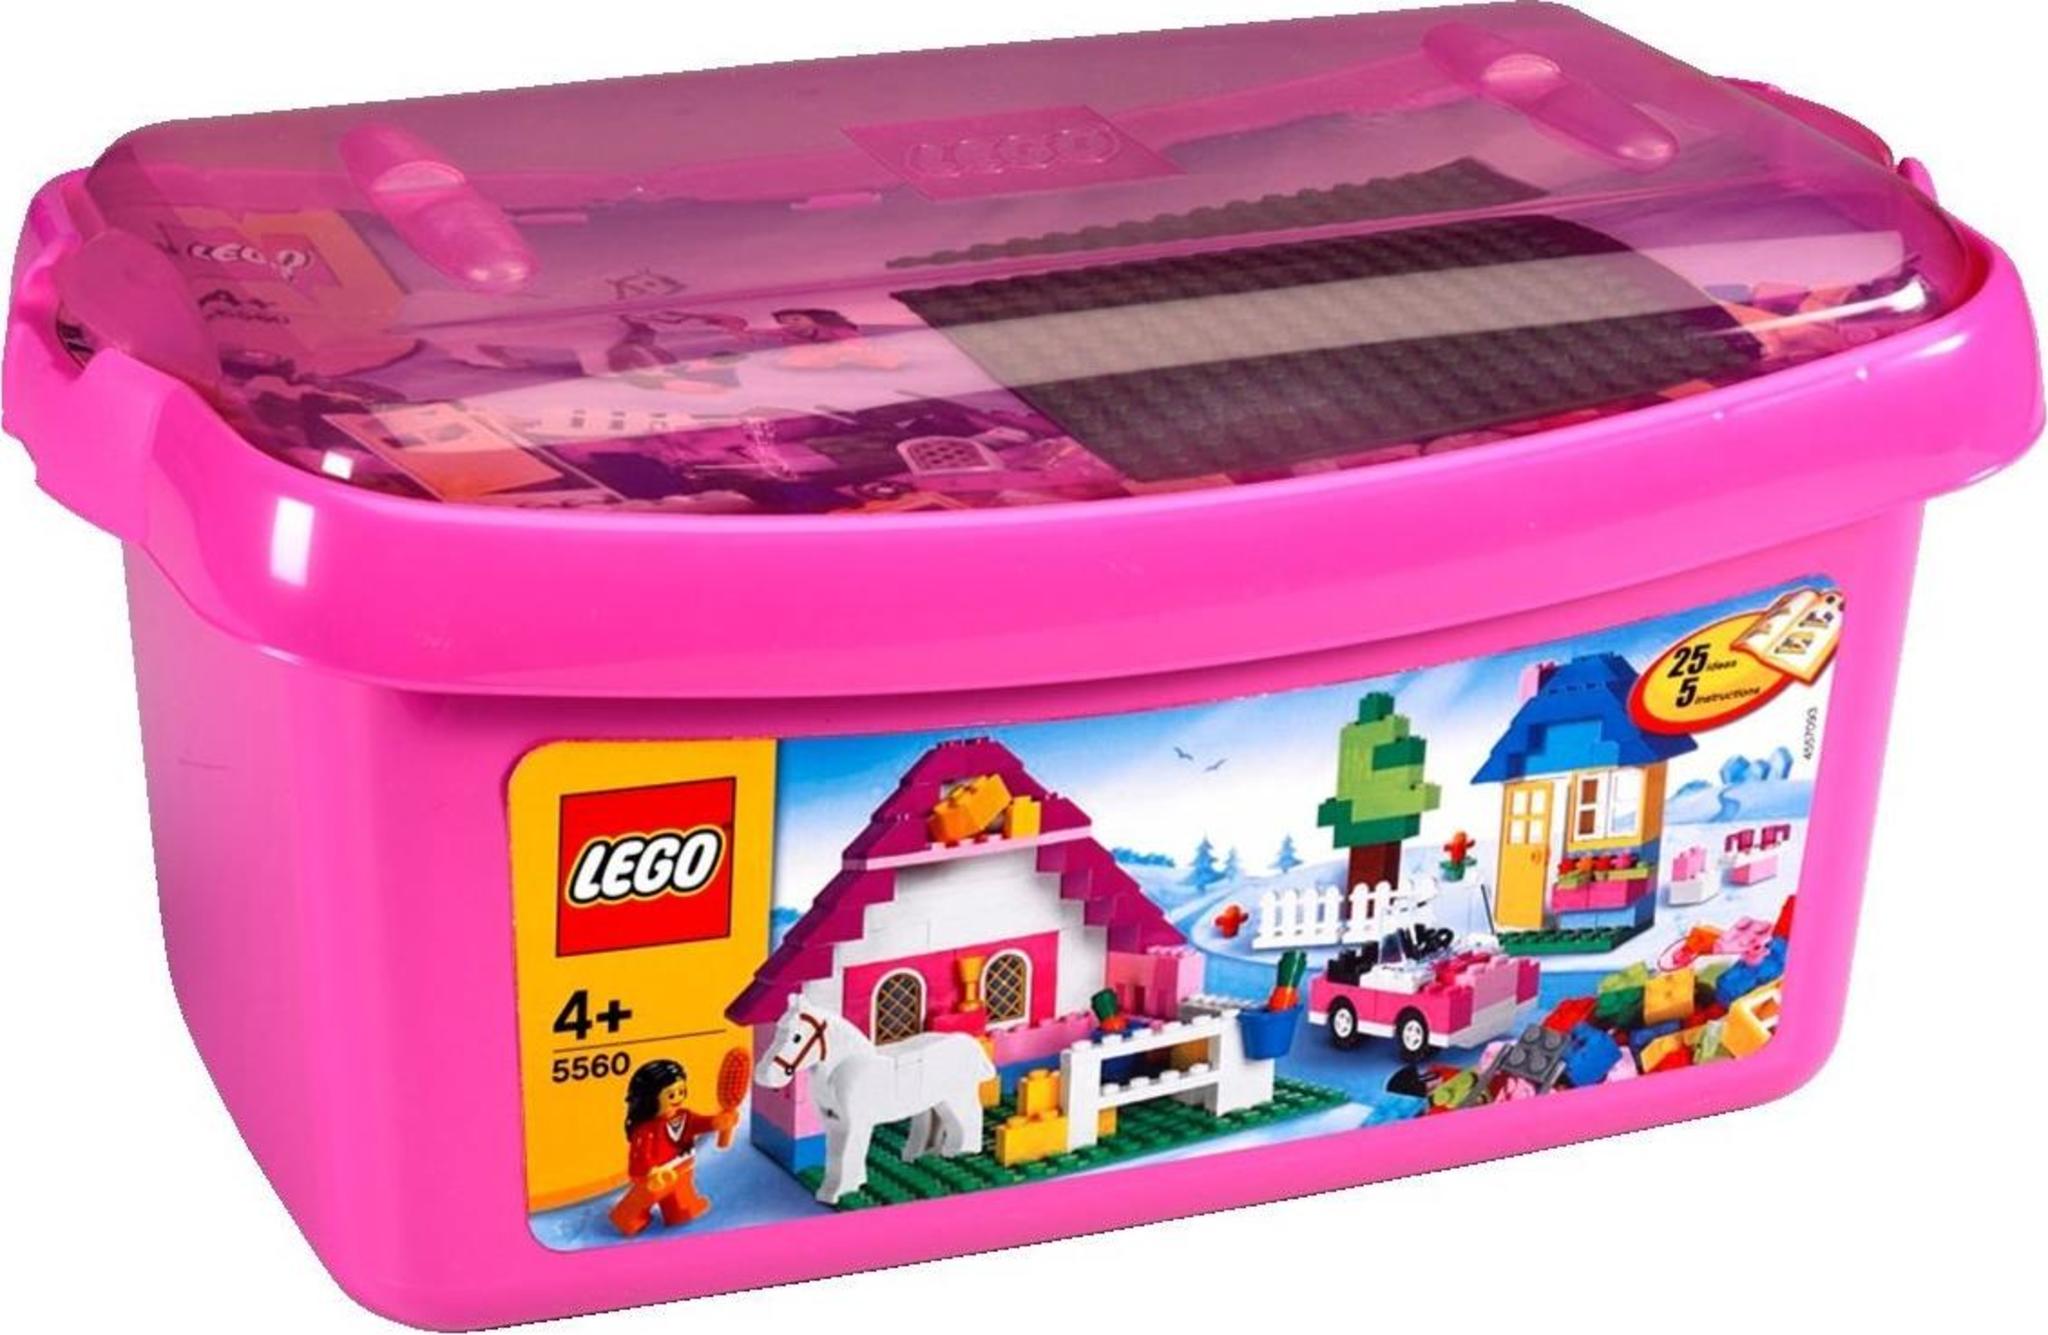 LEGO Bricks And More 5560 - Grande Contenitore Rosa